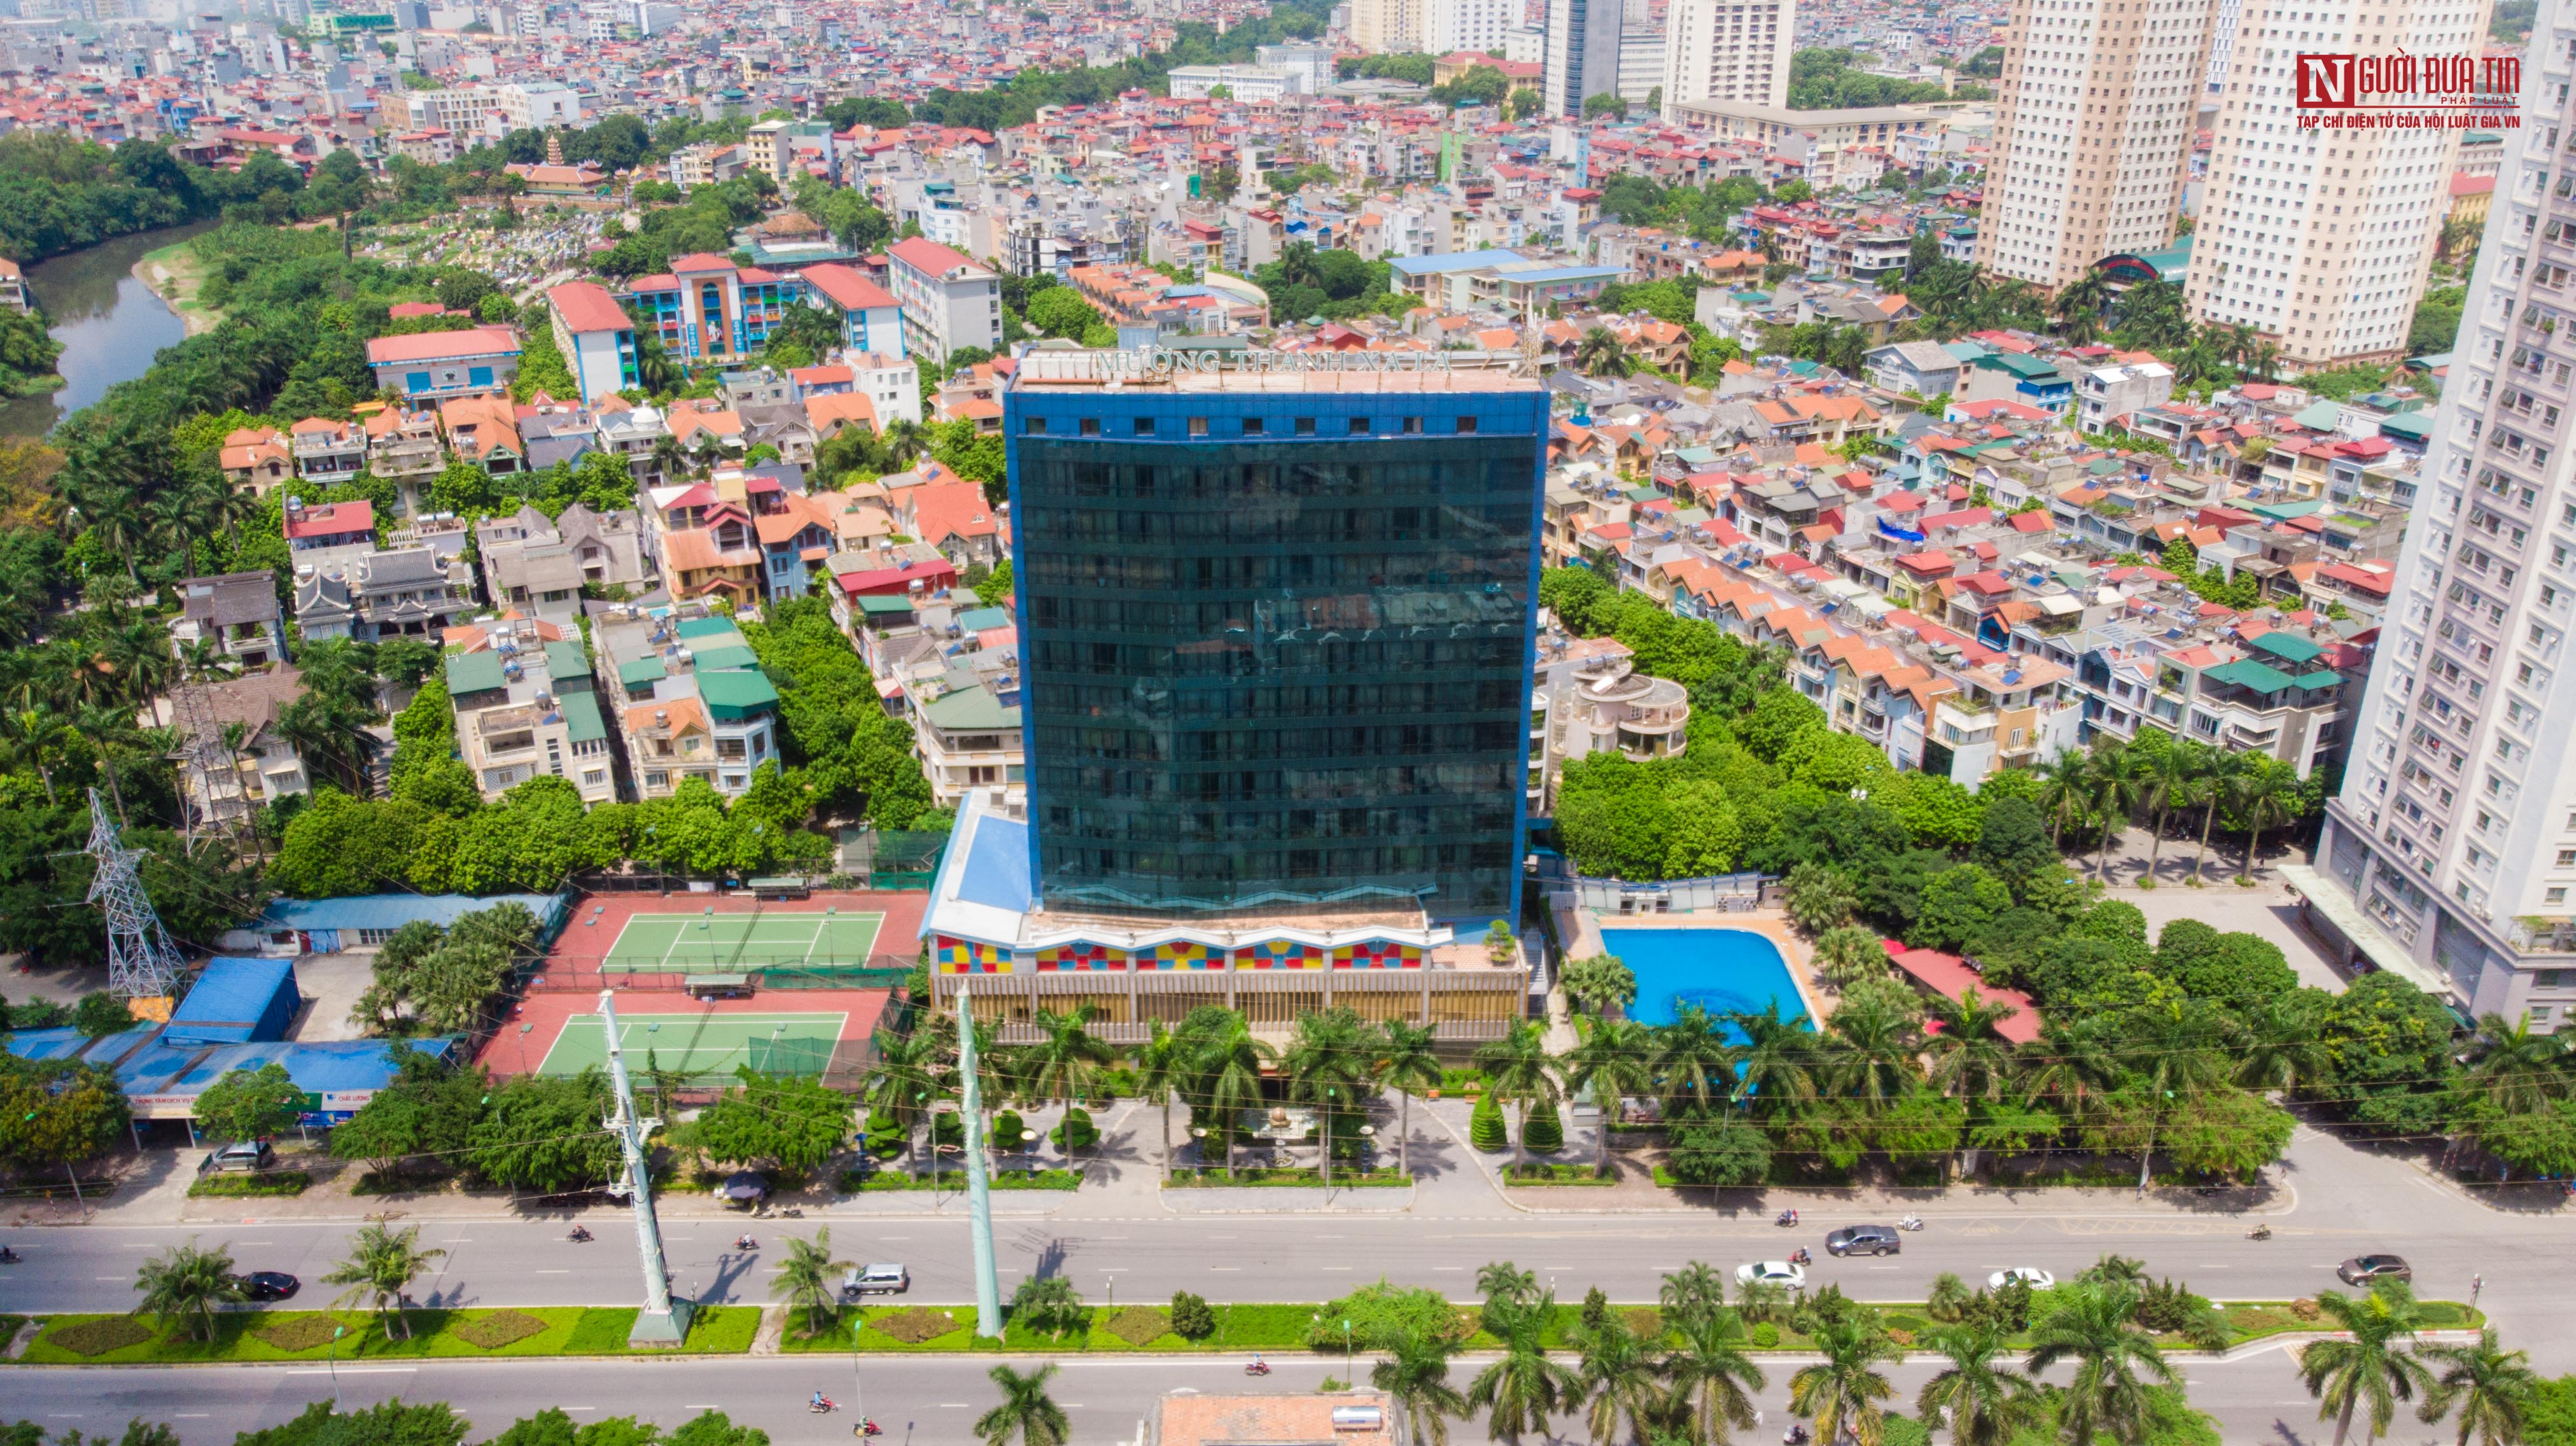 Tin nhanh - Cận cảnh hoạt động của khách sạn được chọn làm nơi cách ly ở Hà Nội